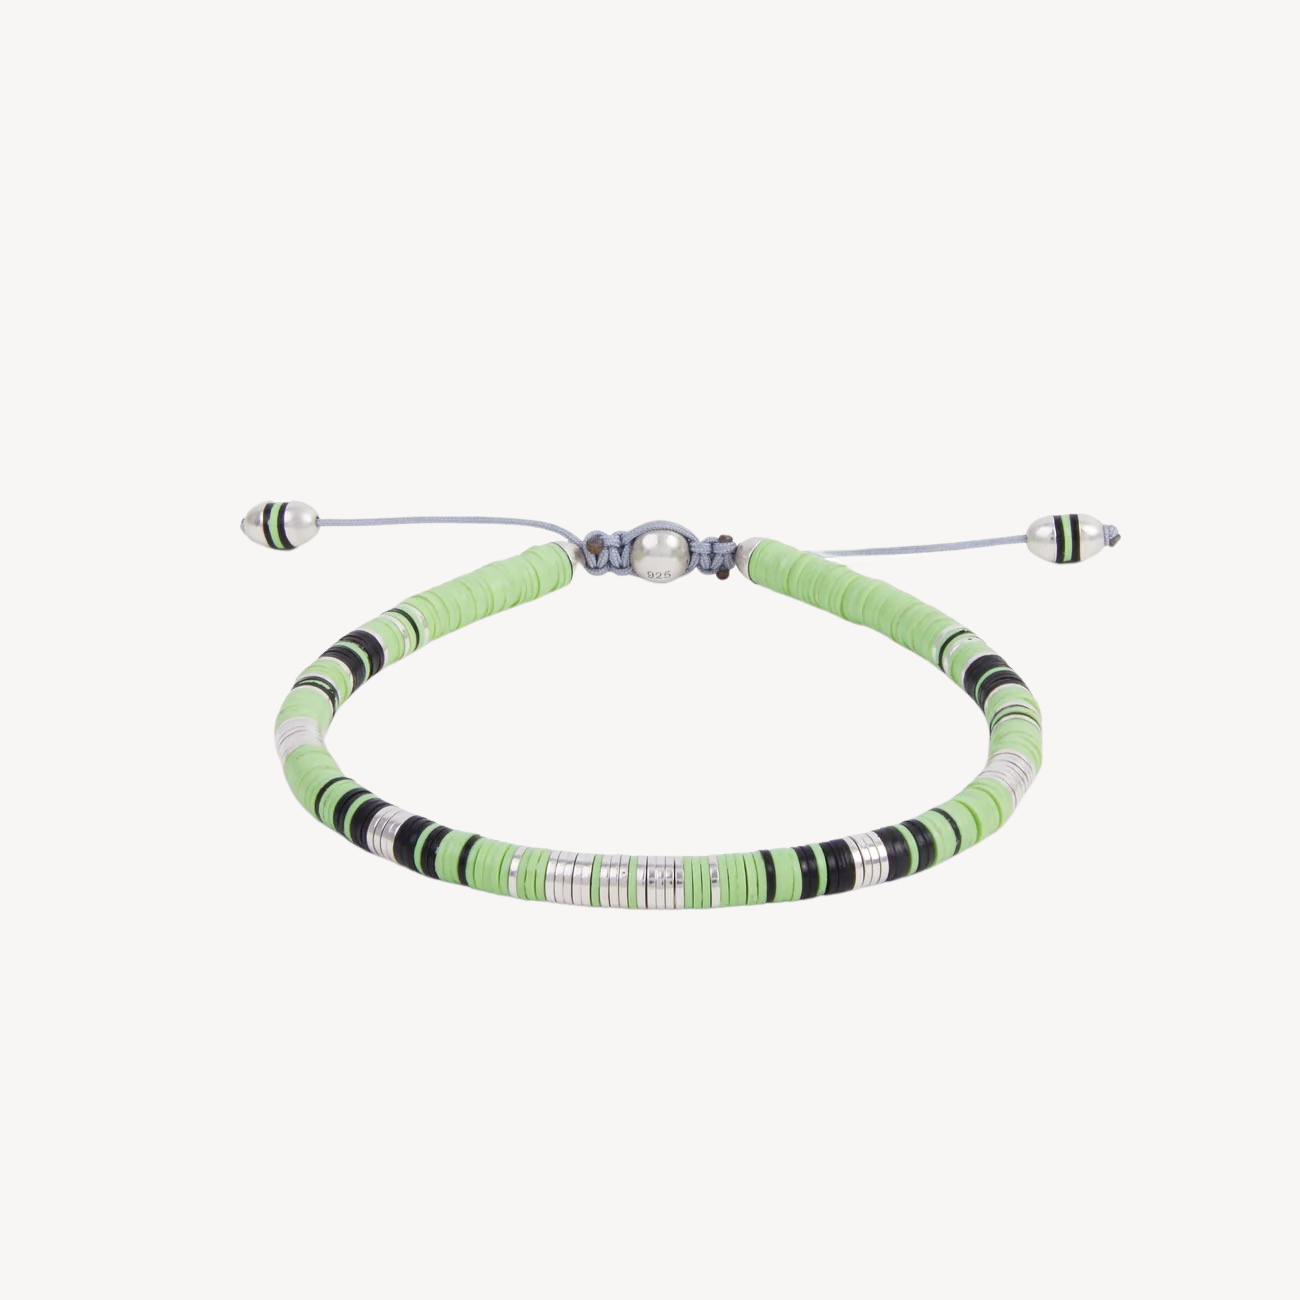 Rizon Perlen mit lindgrünem Muster und silbernen Scheiben